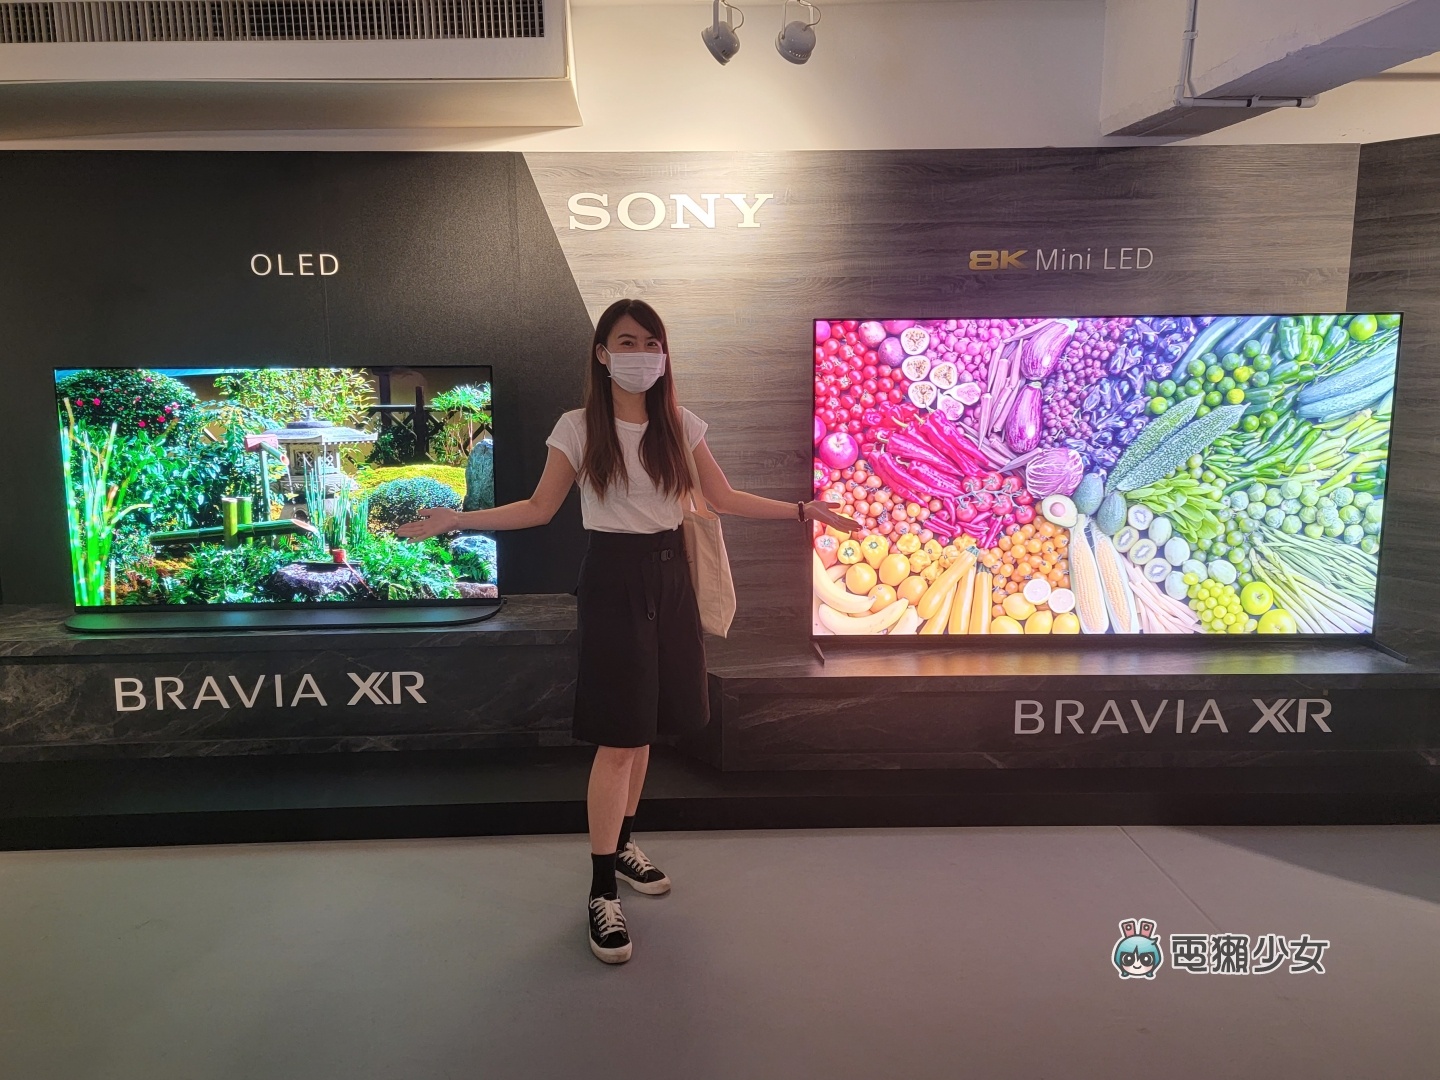 出門｜Sony BRAVIA XR 電視全系列皆為 PS5 推薦機種，體驗 OLED、Mini LED 的旗艦級顯色